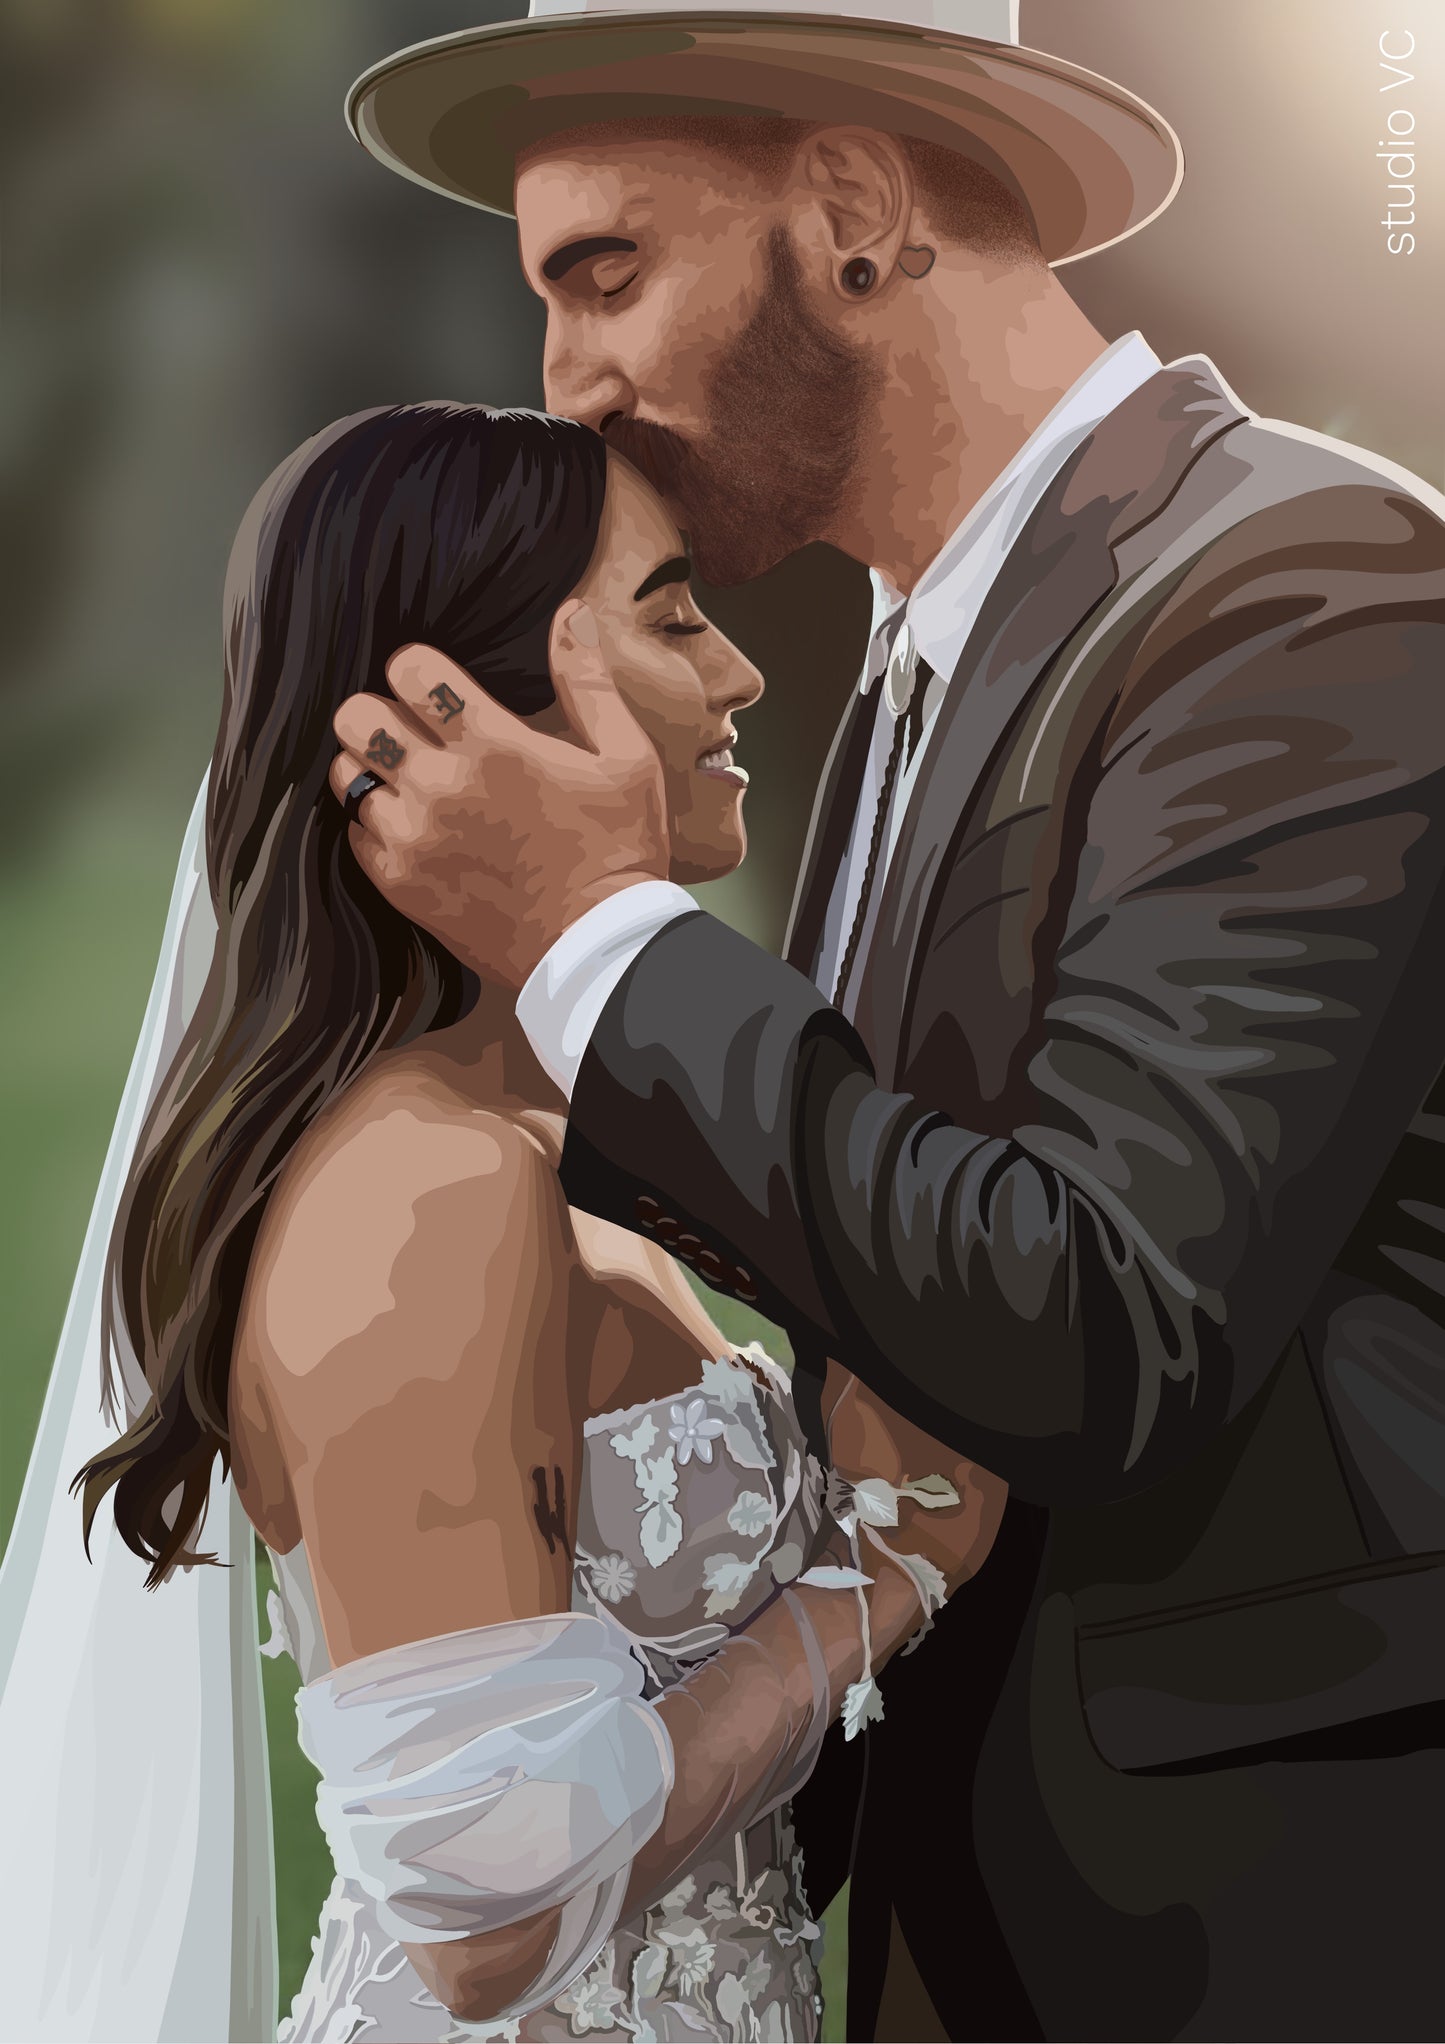 Custom Illustration • Style 3 • Weddings